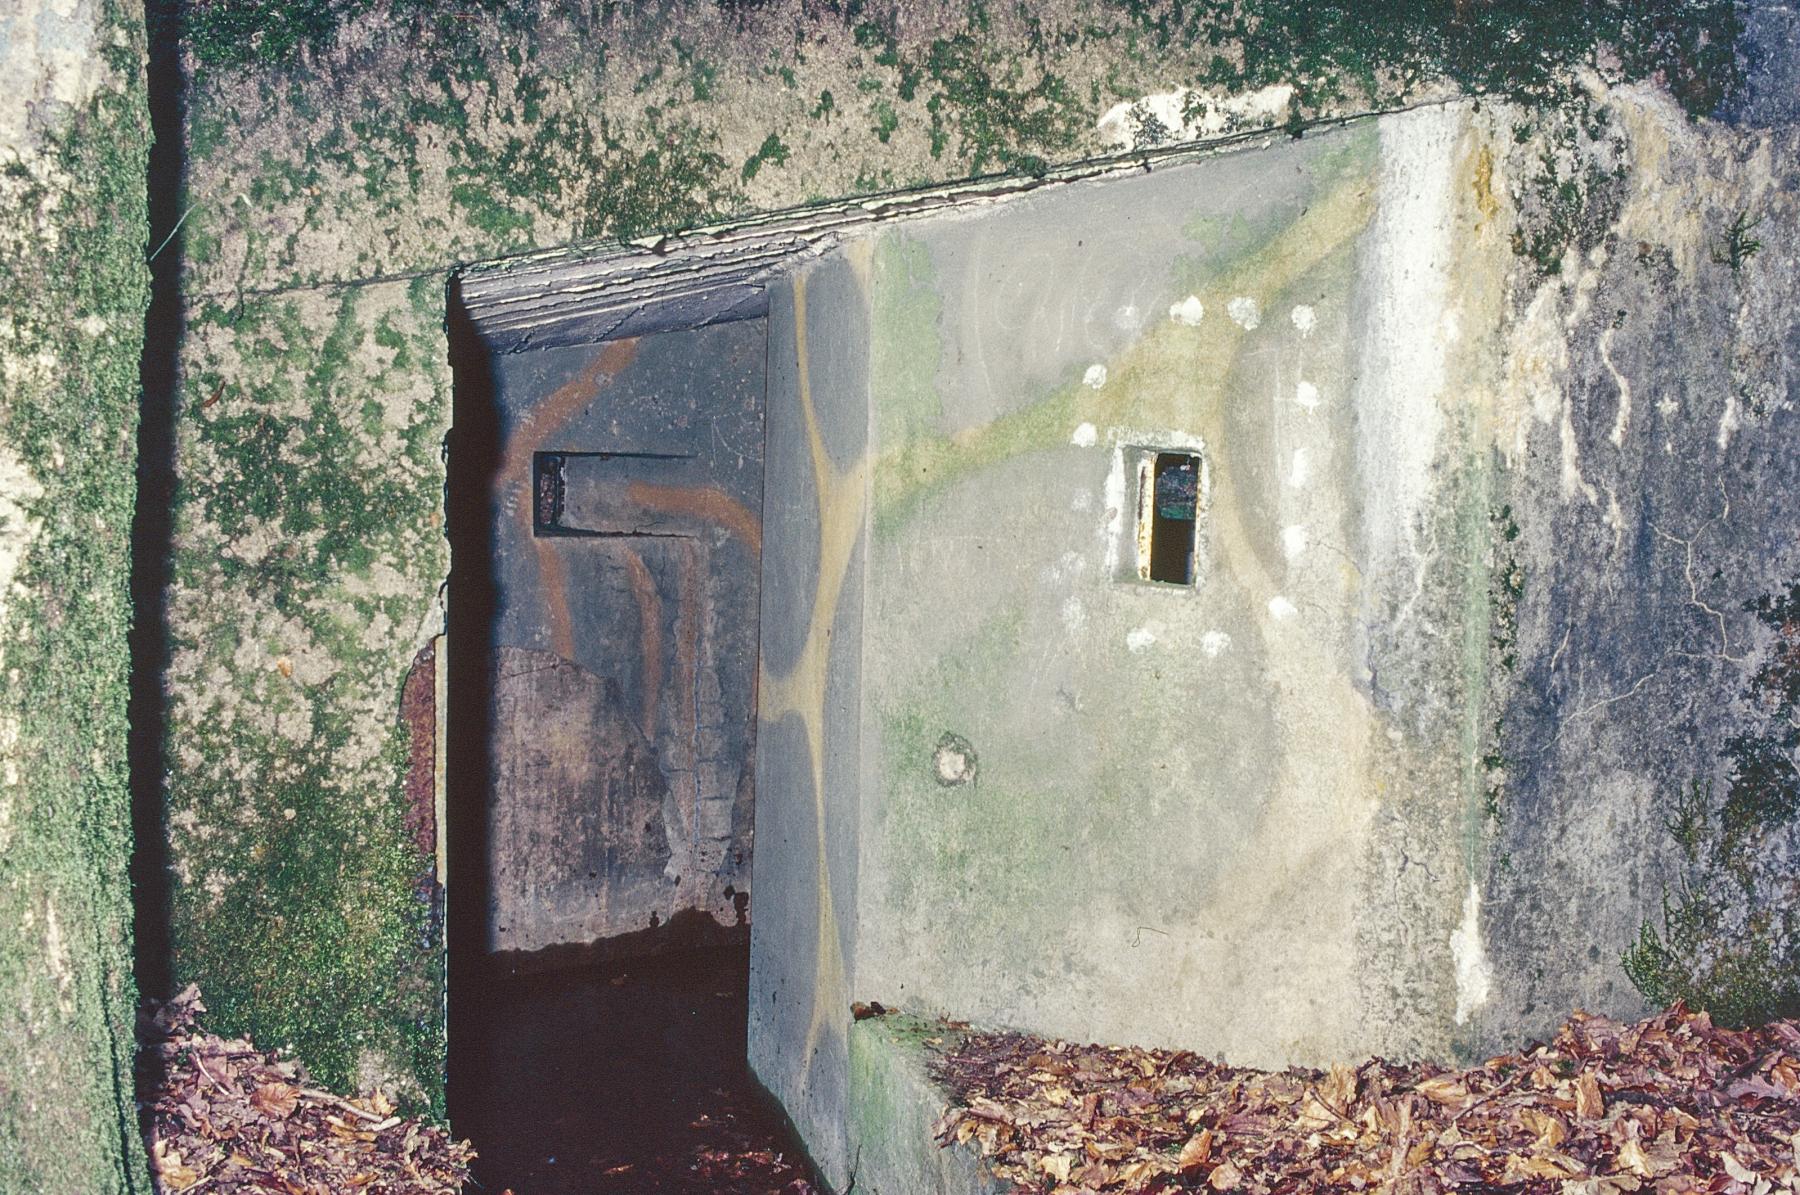 Ligne Maginot - F2B - GRUNDVILLER 5 - (Blockhaus pour arme infanterie) - L'entrée
La peinture camouflage est encore visible